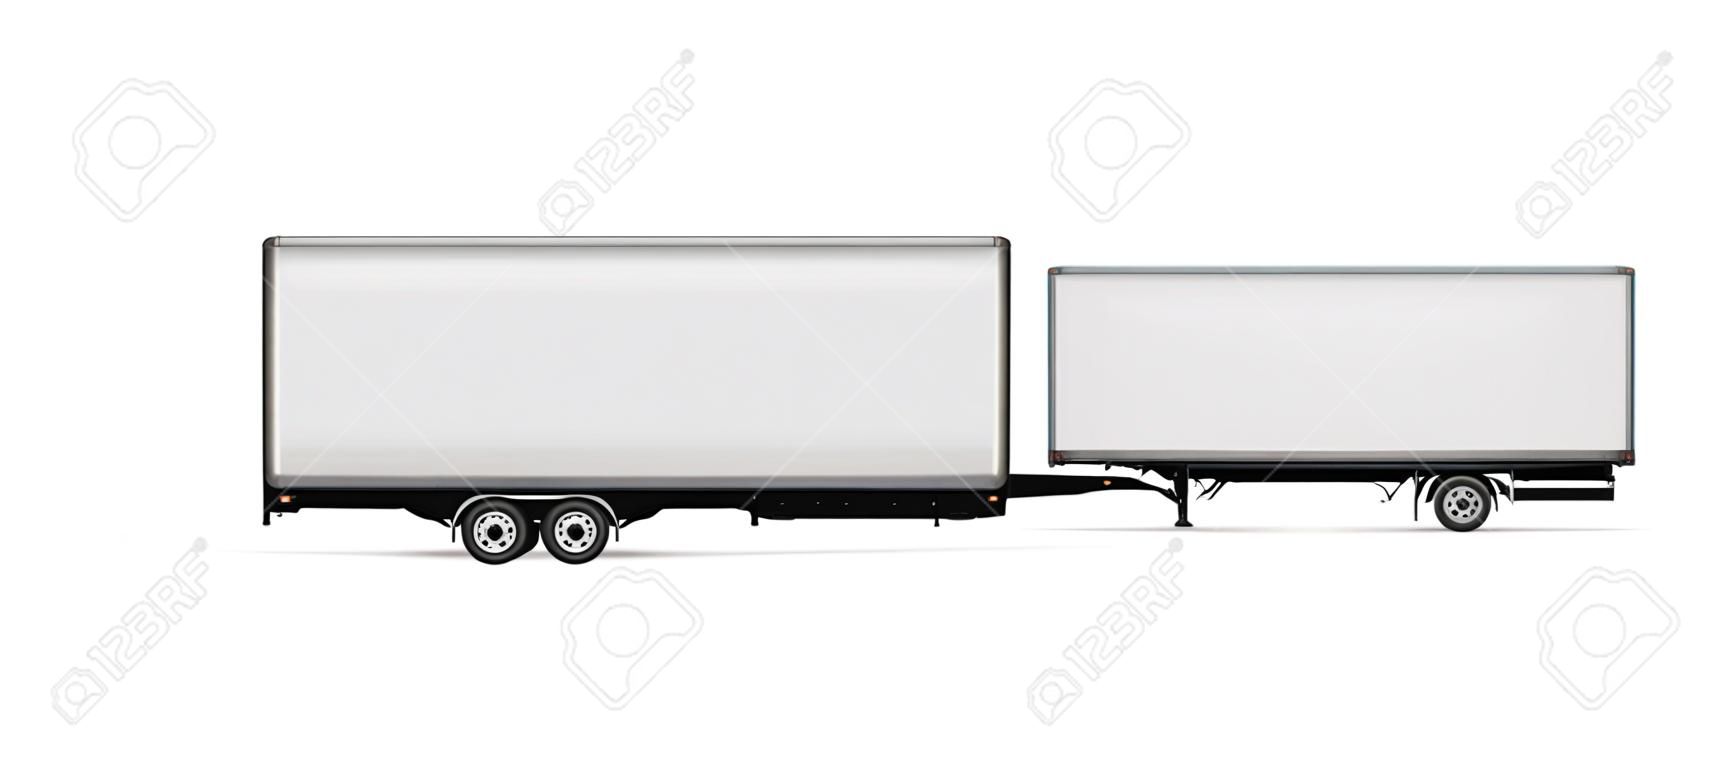 Modelo vetorial de caminhão semi-reboque. Caminhão isolado com reboque no branco para marca de veículo, identidade corporativa. Todos os elementos nos grupos em camadas separadas para fácil edição e recoloração